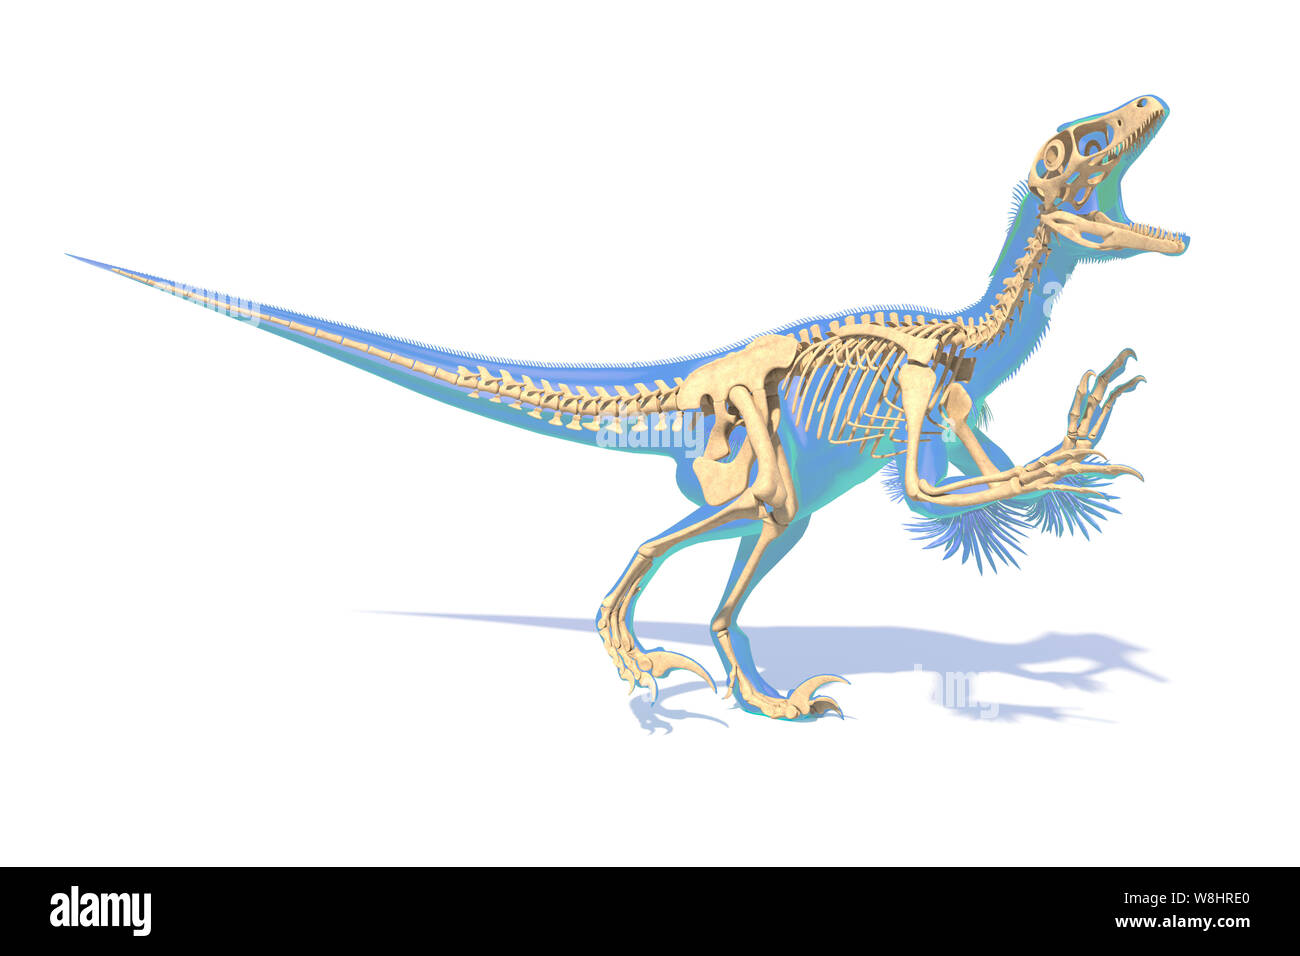 Utahraptor Dinosaurier Skelettstruktur, Illustration. Diese Dinosaurier lebten während der frühen Kreidezeit, ungefähr 126 Millionen Jahren. Stockfoto